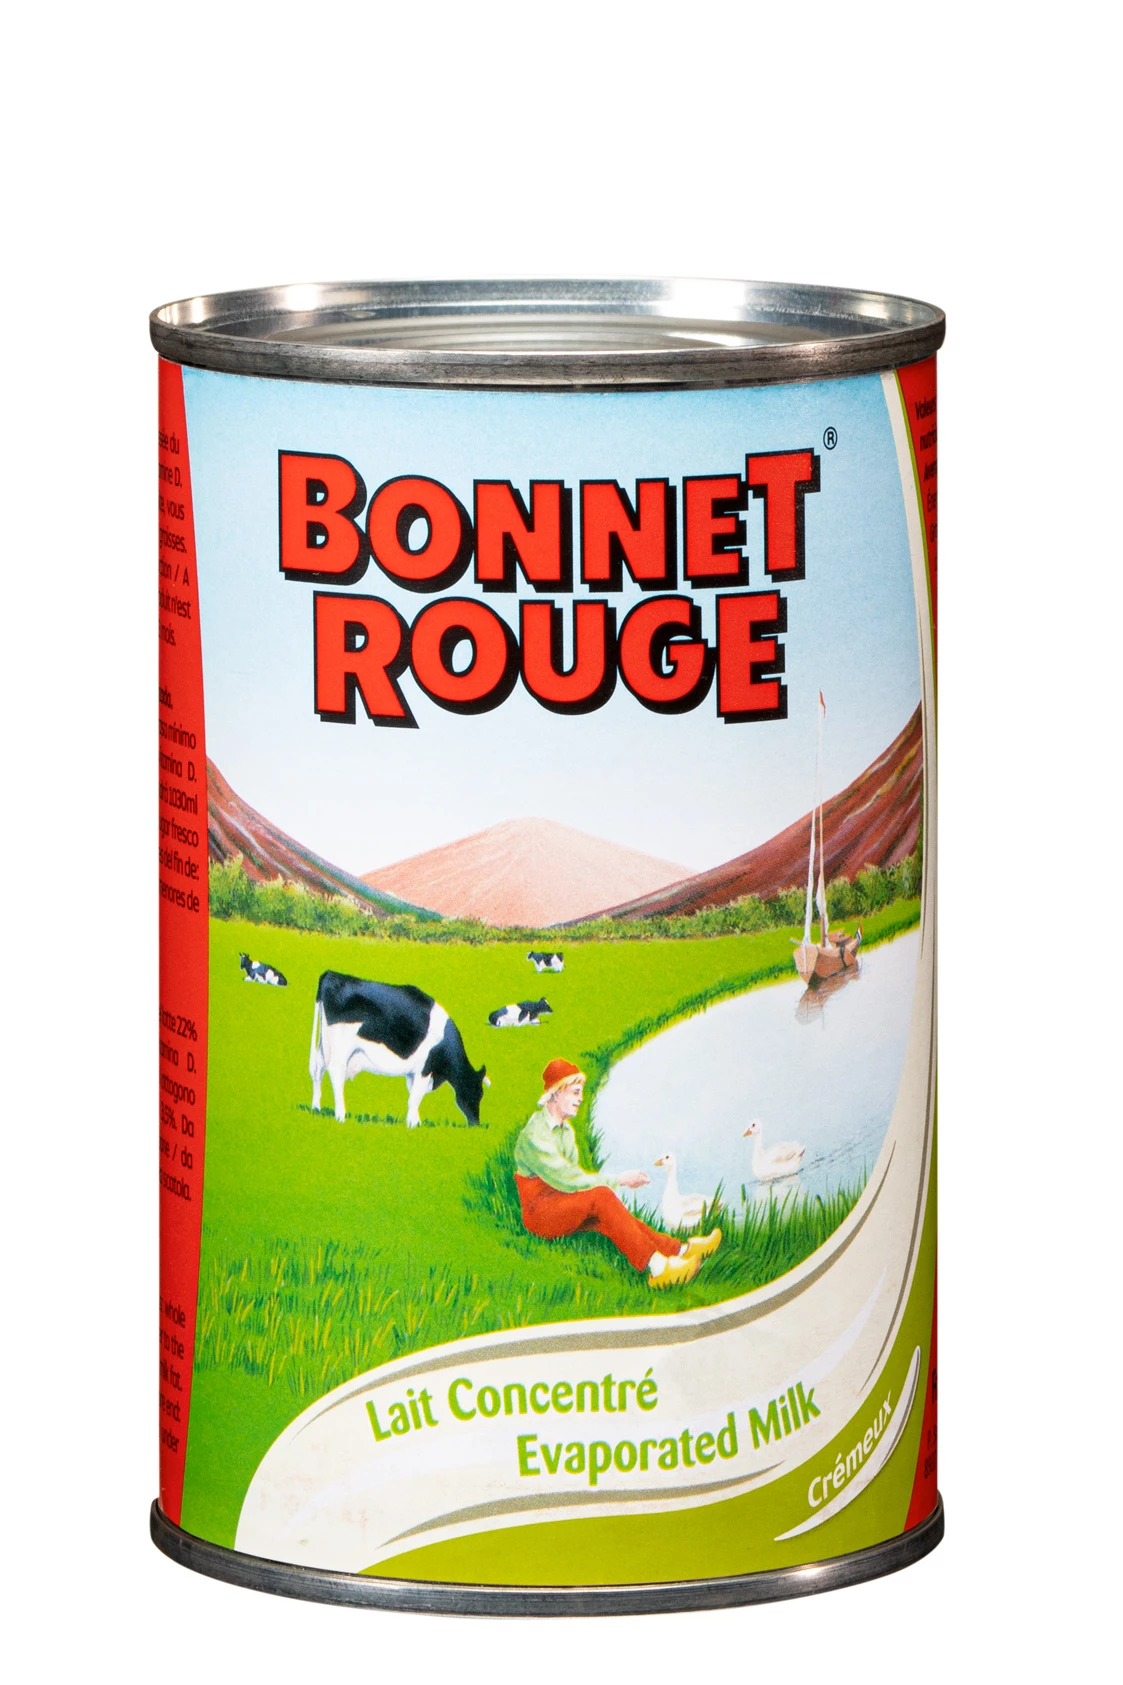 Bonnet voor ongezoete gecondenseerde melk 410 g - Bonnet Rouge